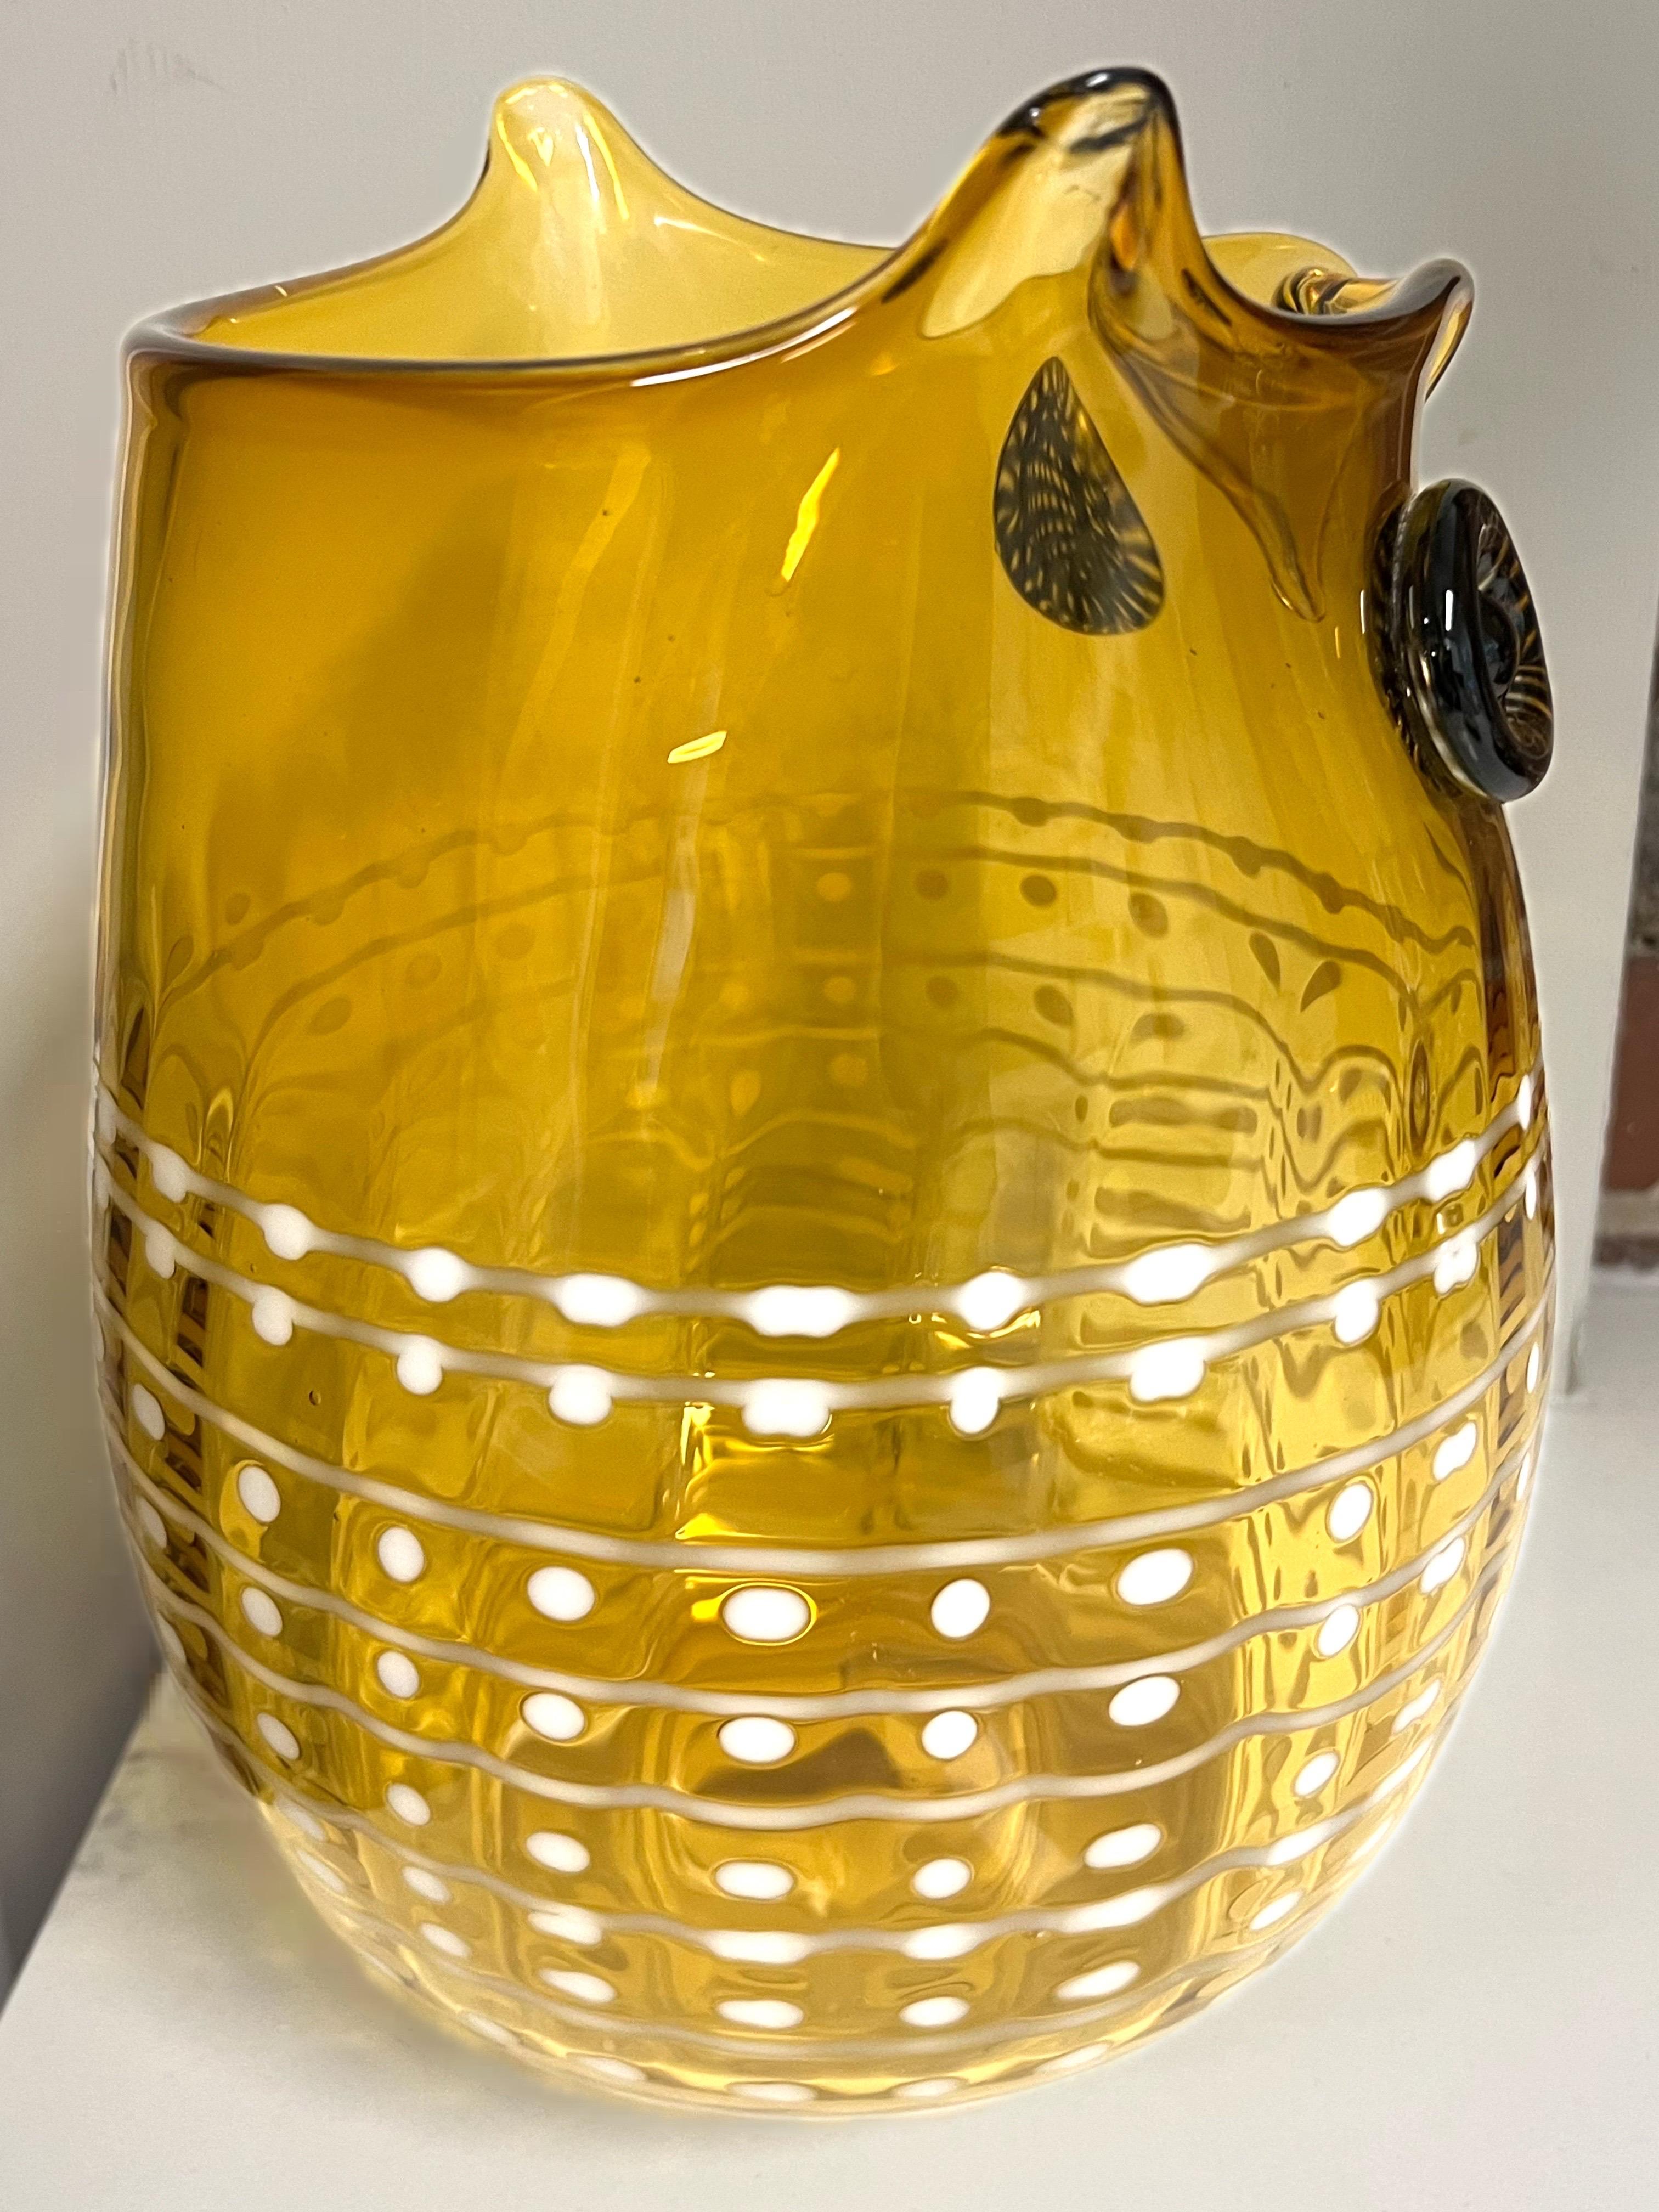 Big Vintage 1970s Blenko Art Glass Modernist Owl Design Vase For Sale 1